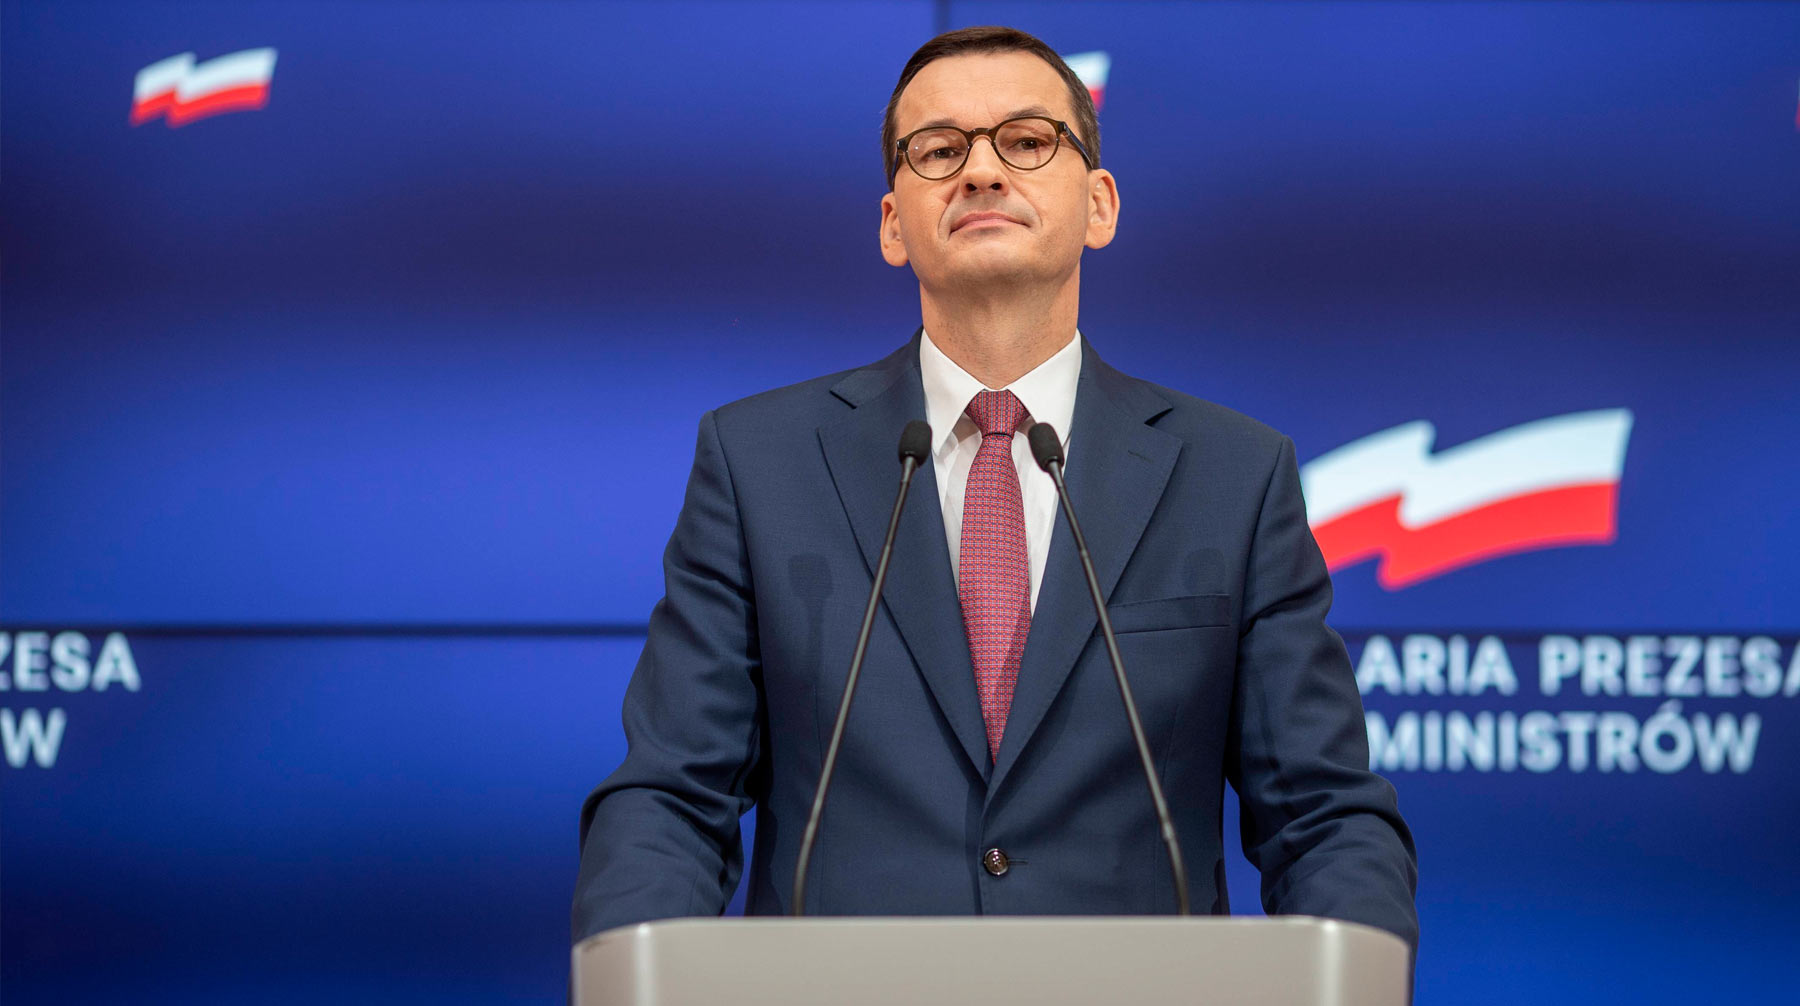 Варшава выступает против «Северного потока — 2» из-за его политической опасности, заявил Матеуш Моравец Премьер-министр Польши Матеуш Моравец